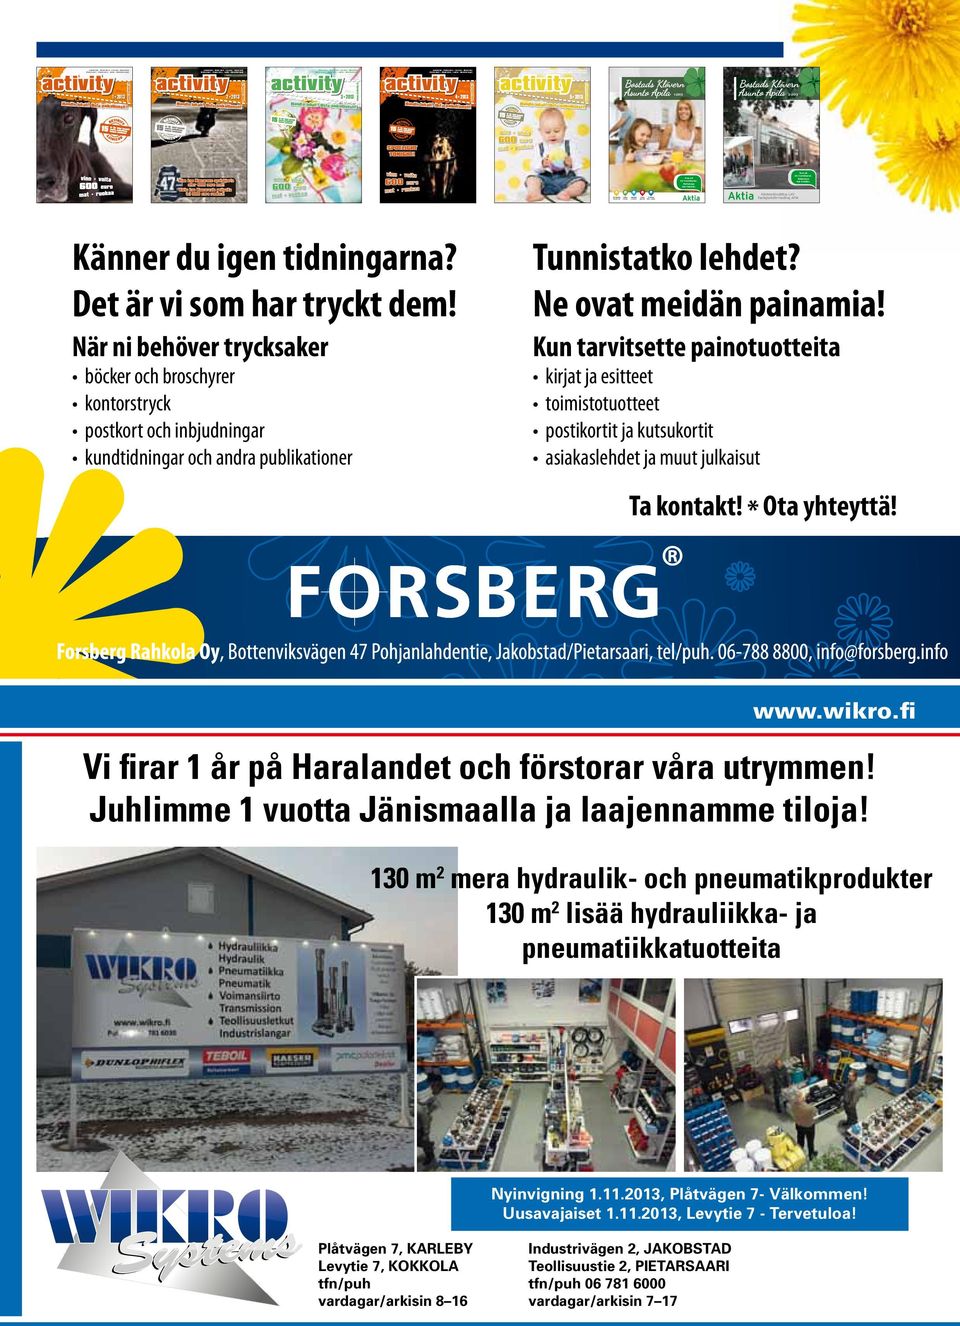 Osta paikallisesti! Jakobstad - Pedersöre - Larsmo - Nykarleby Pietarsaari - Pedersöre - Luoto - Uusikaarlepyy activity 